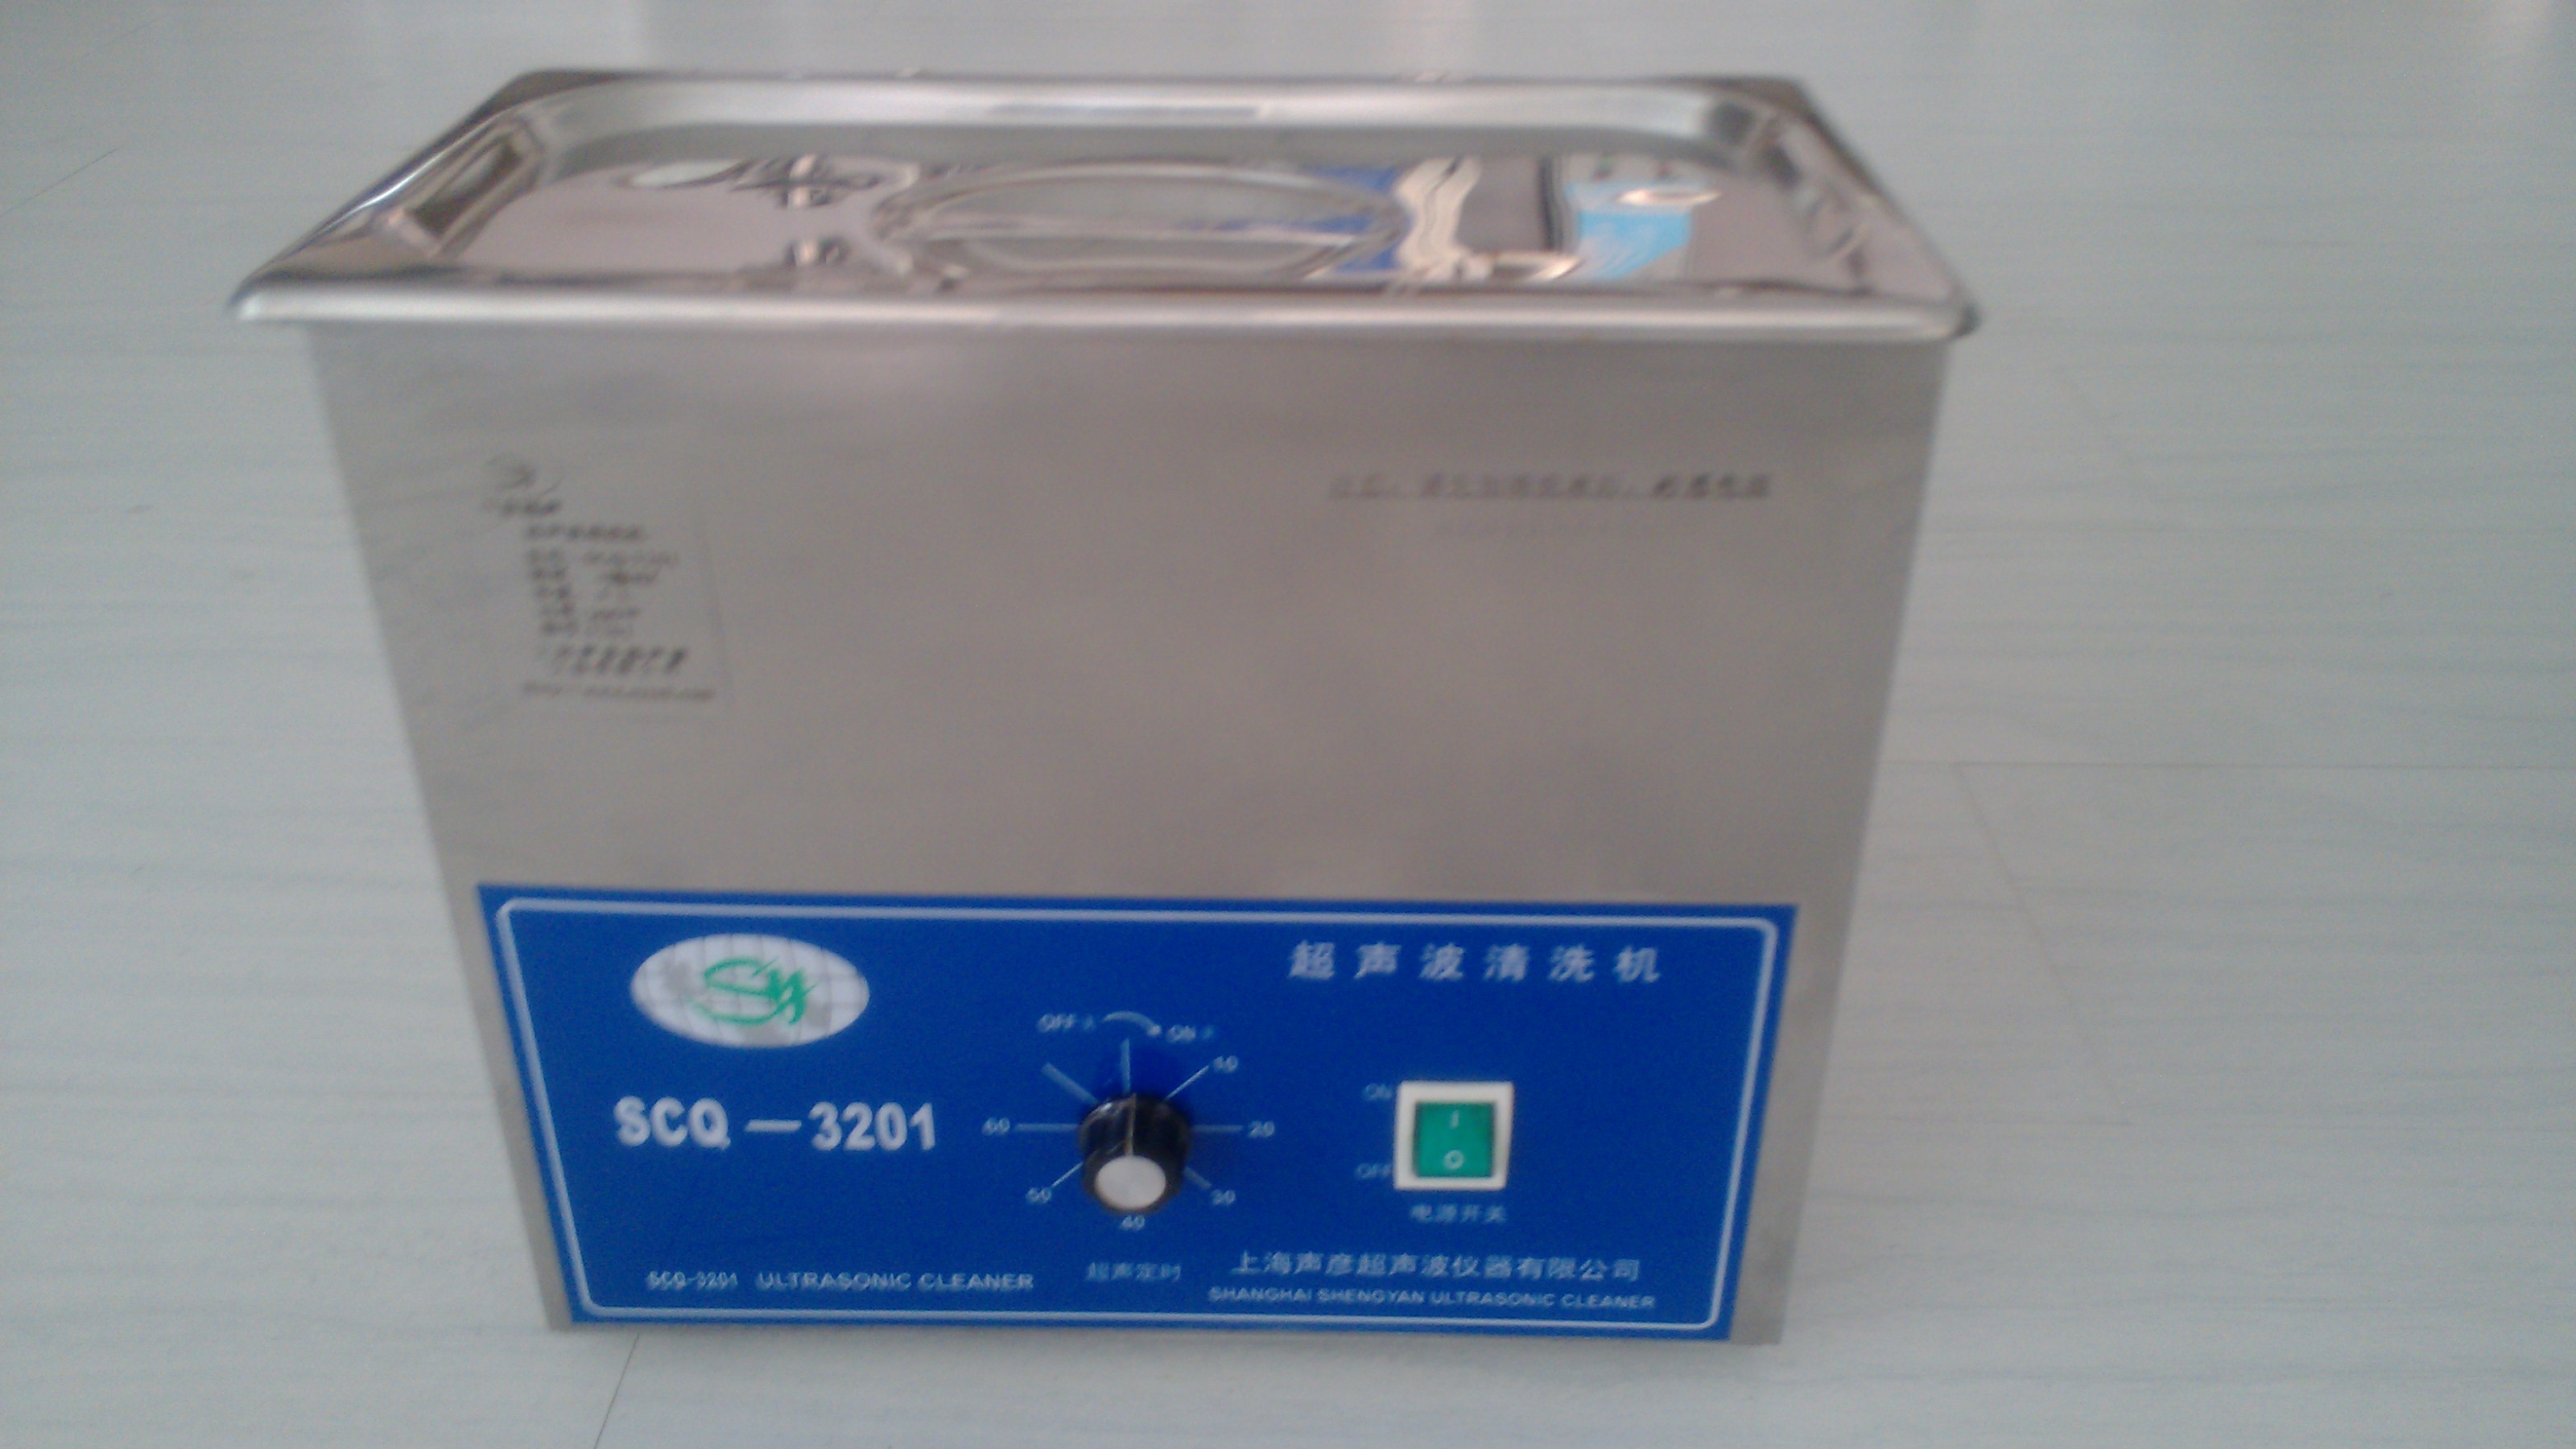 上海声彦SCQ-3201B  数控加热超声波提取仪